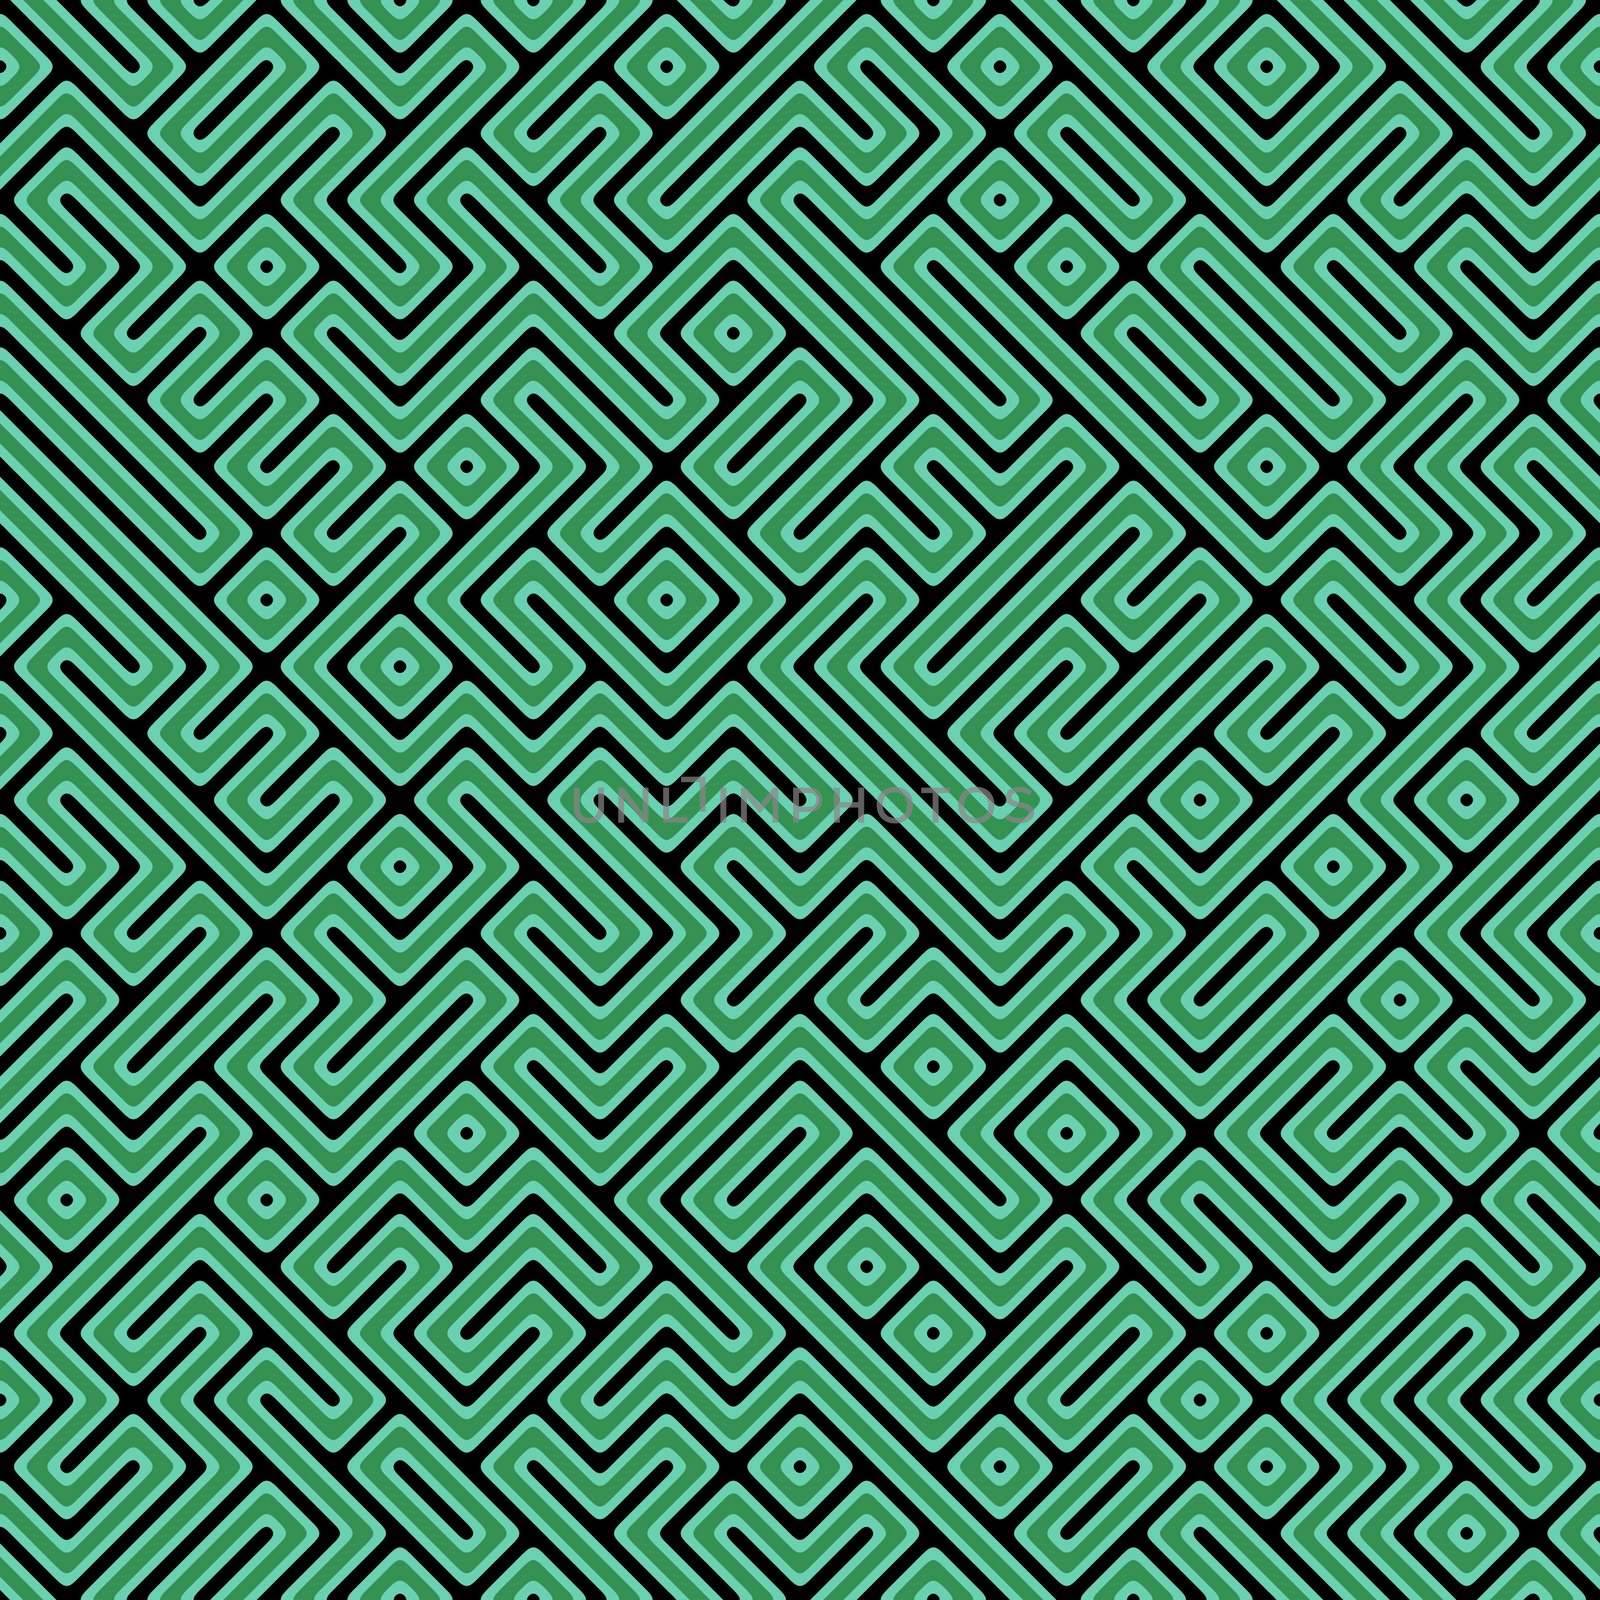 Endless Maze by kentoh